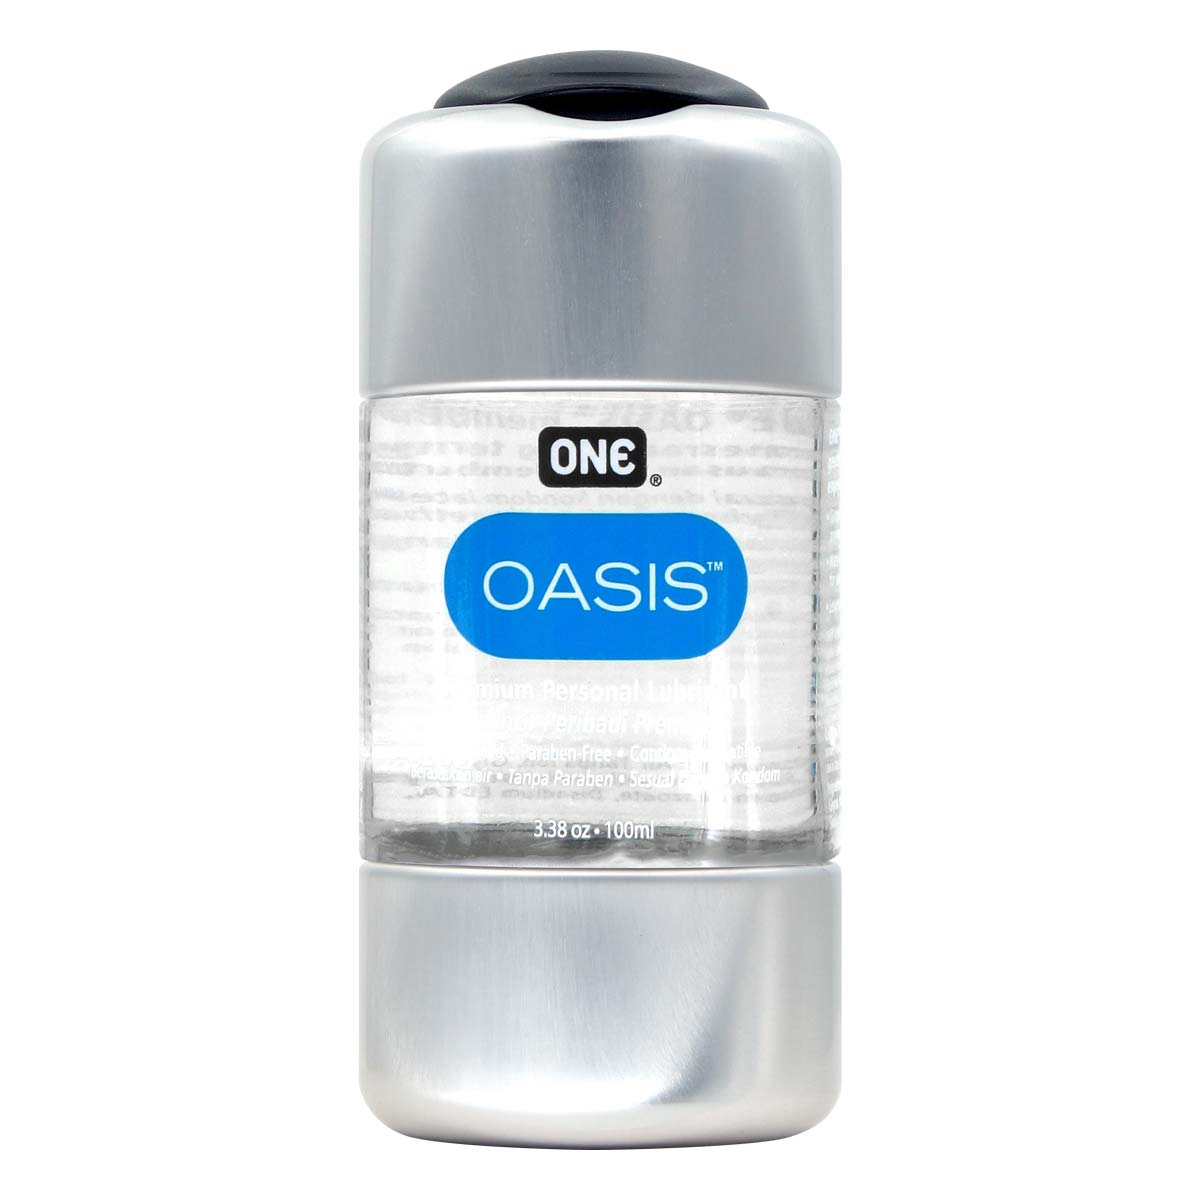 Oil Applicator Bottles – Oasis Prime